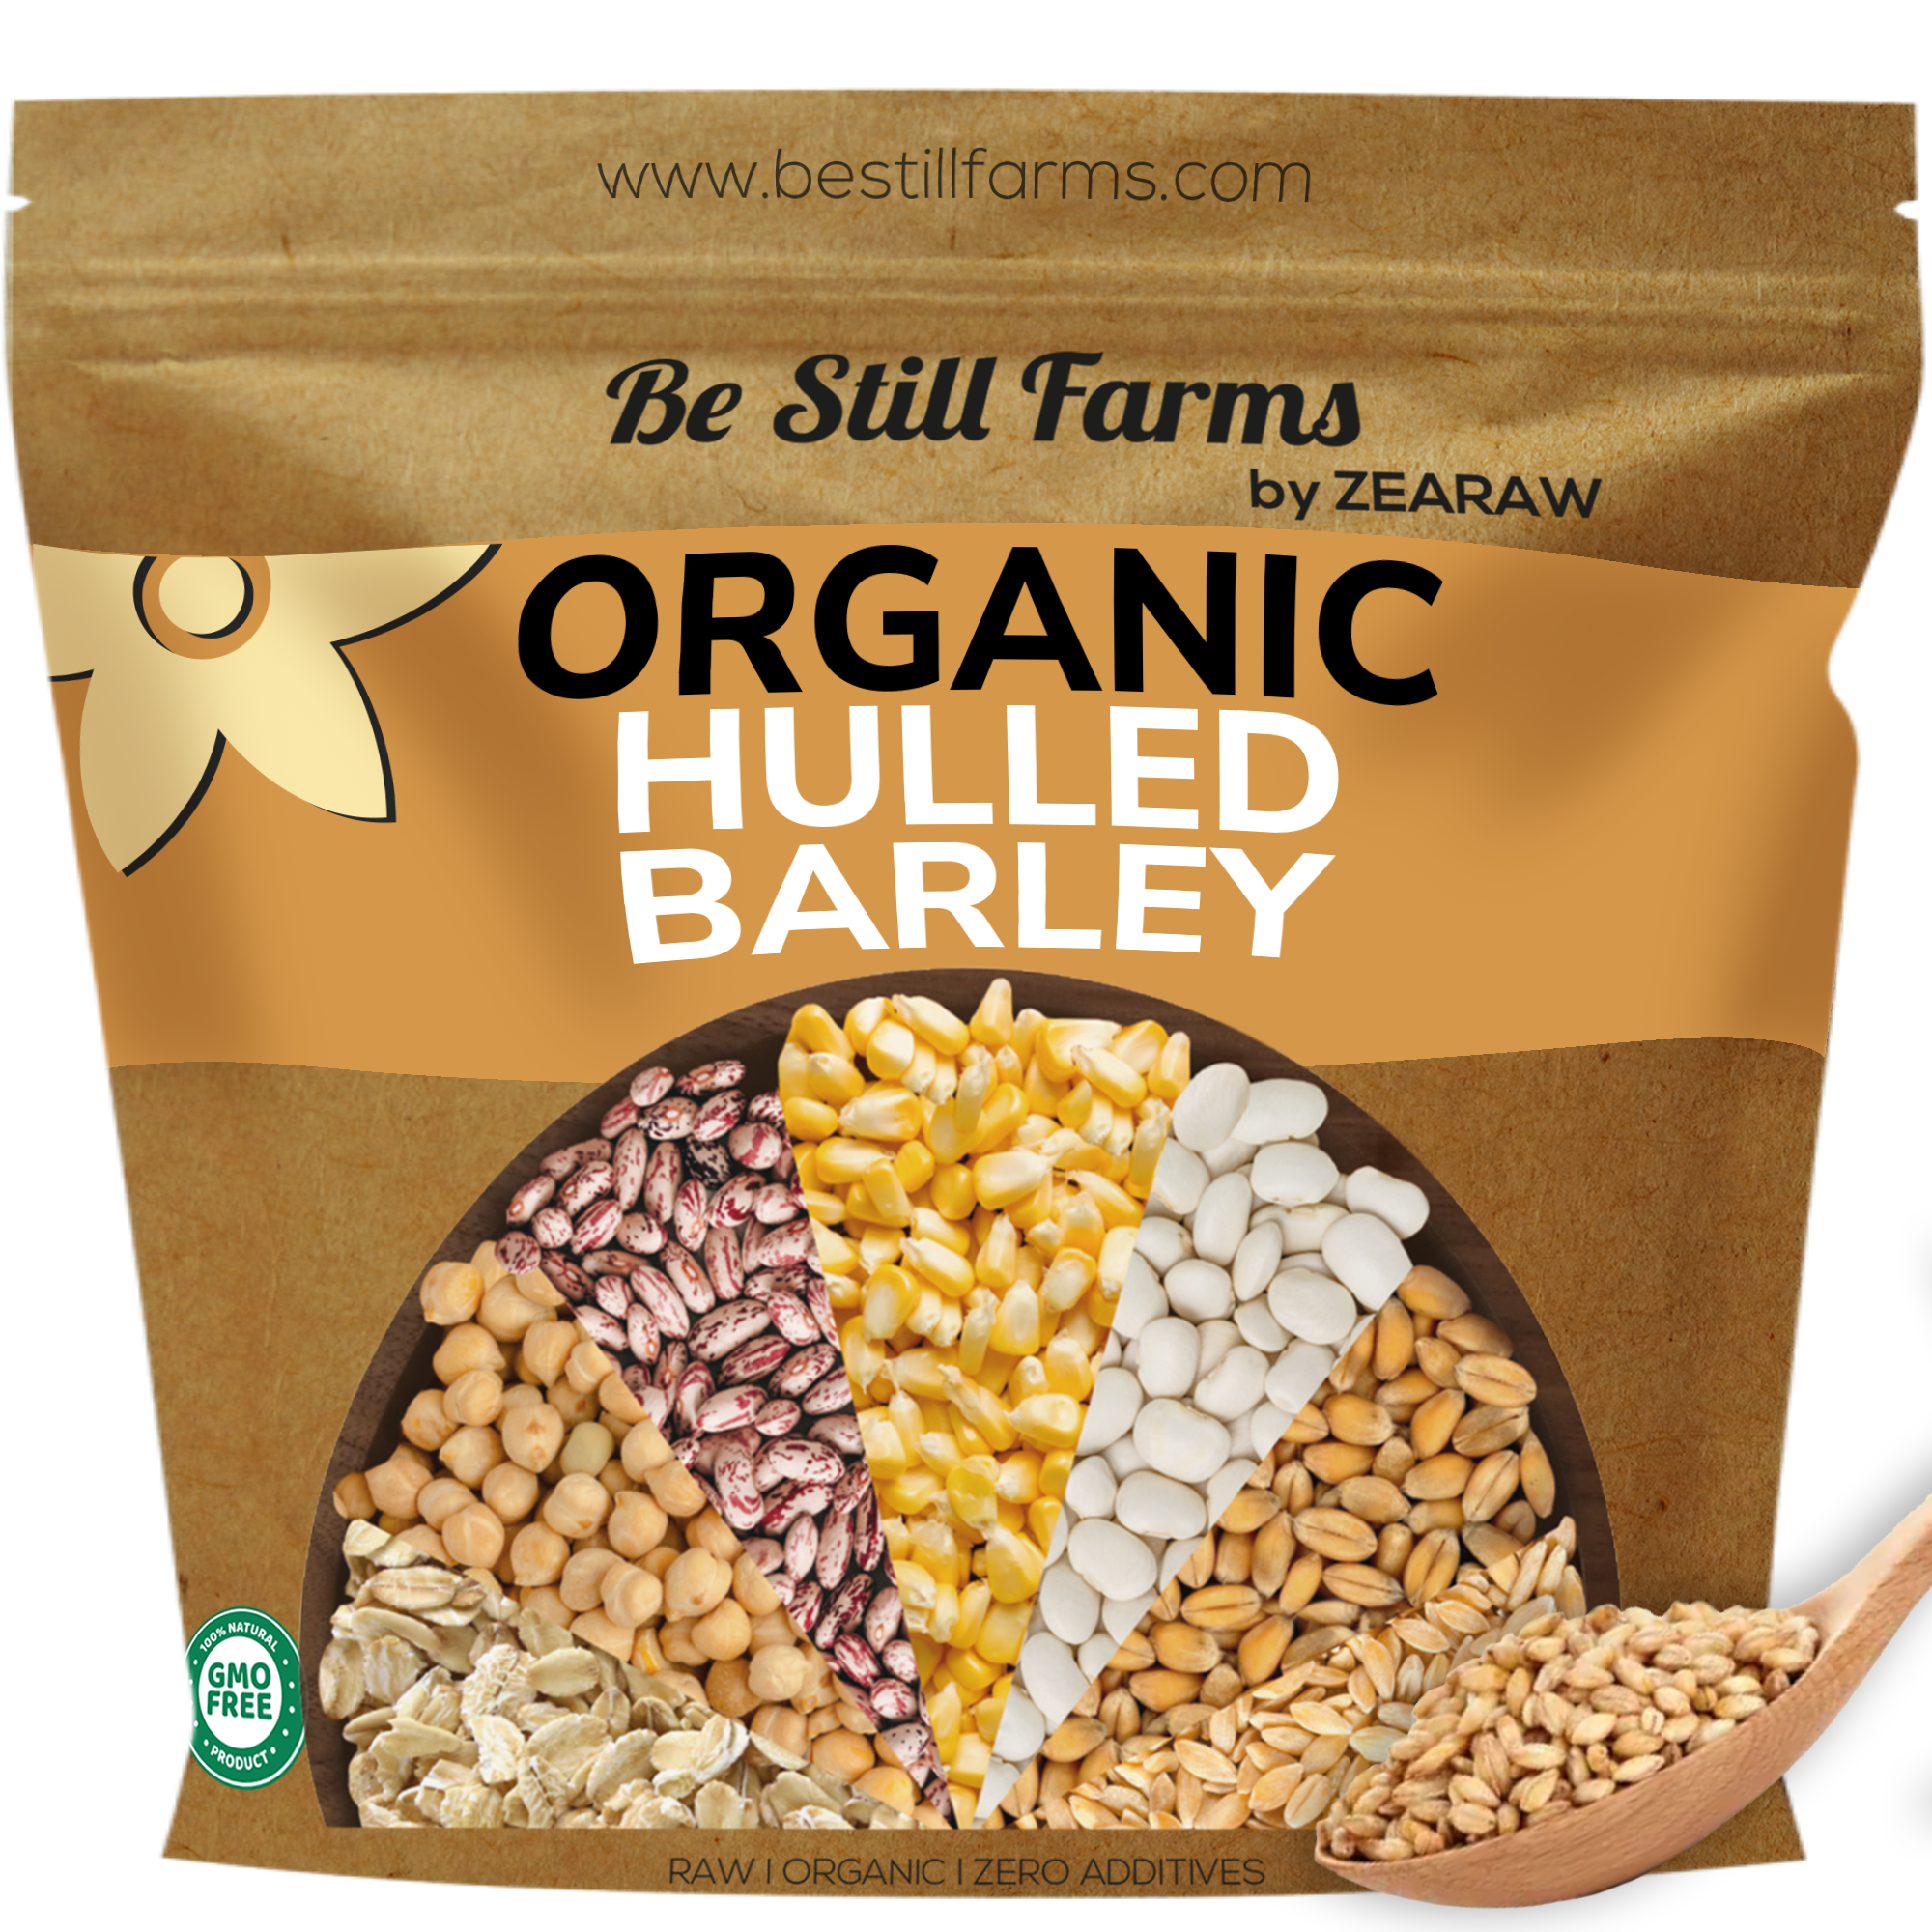 Organic Hulled Barley - Be Still Farms